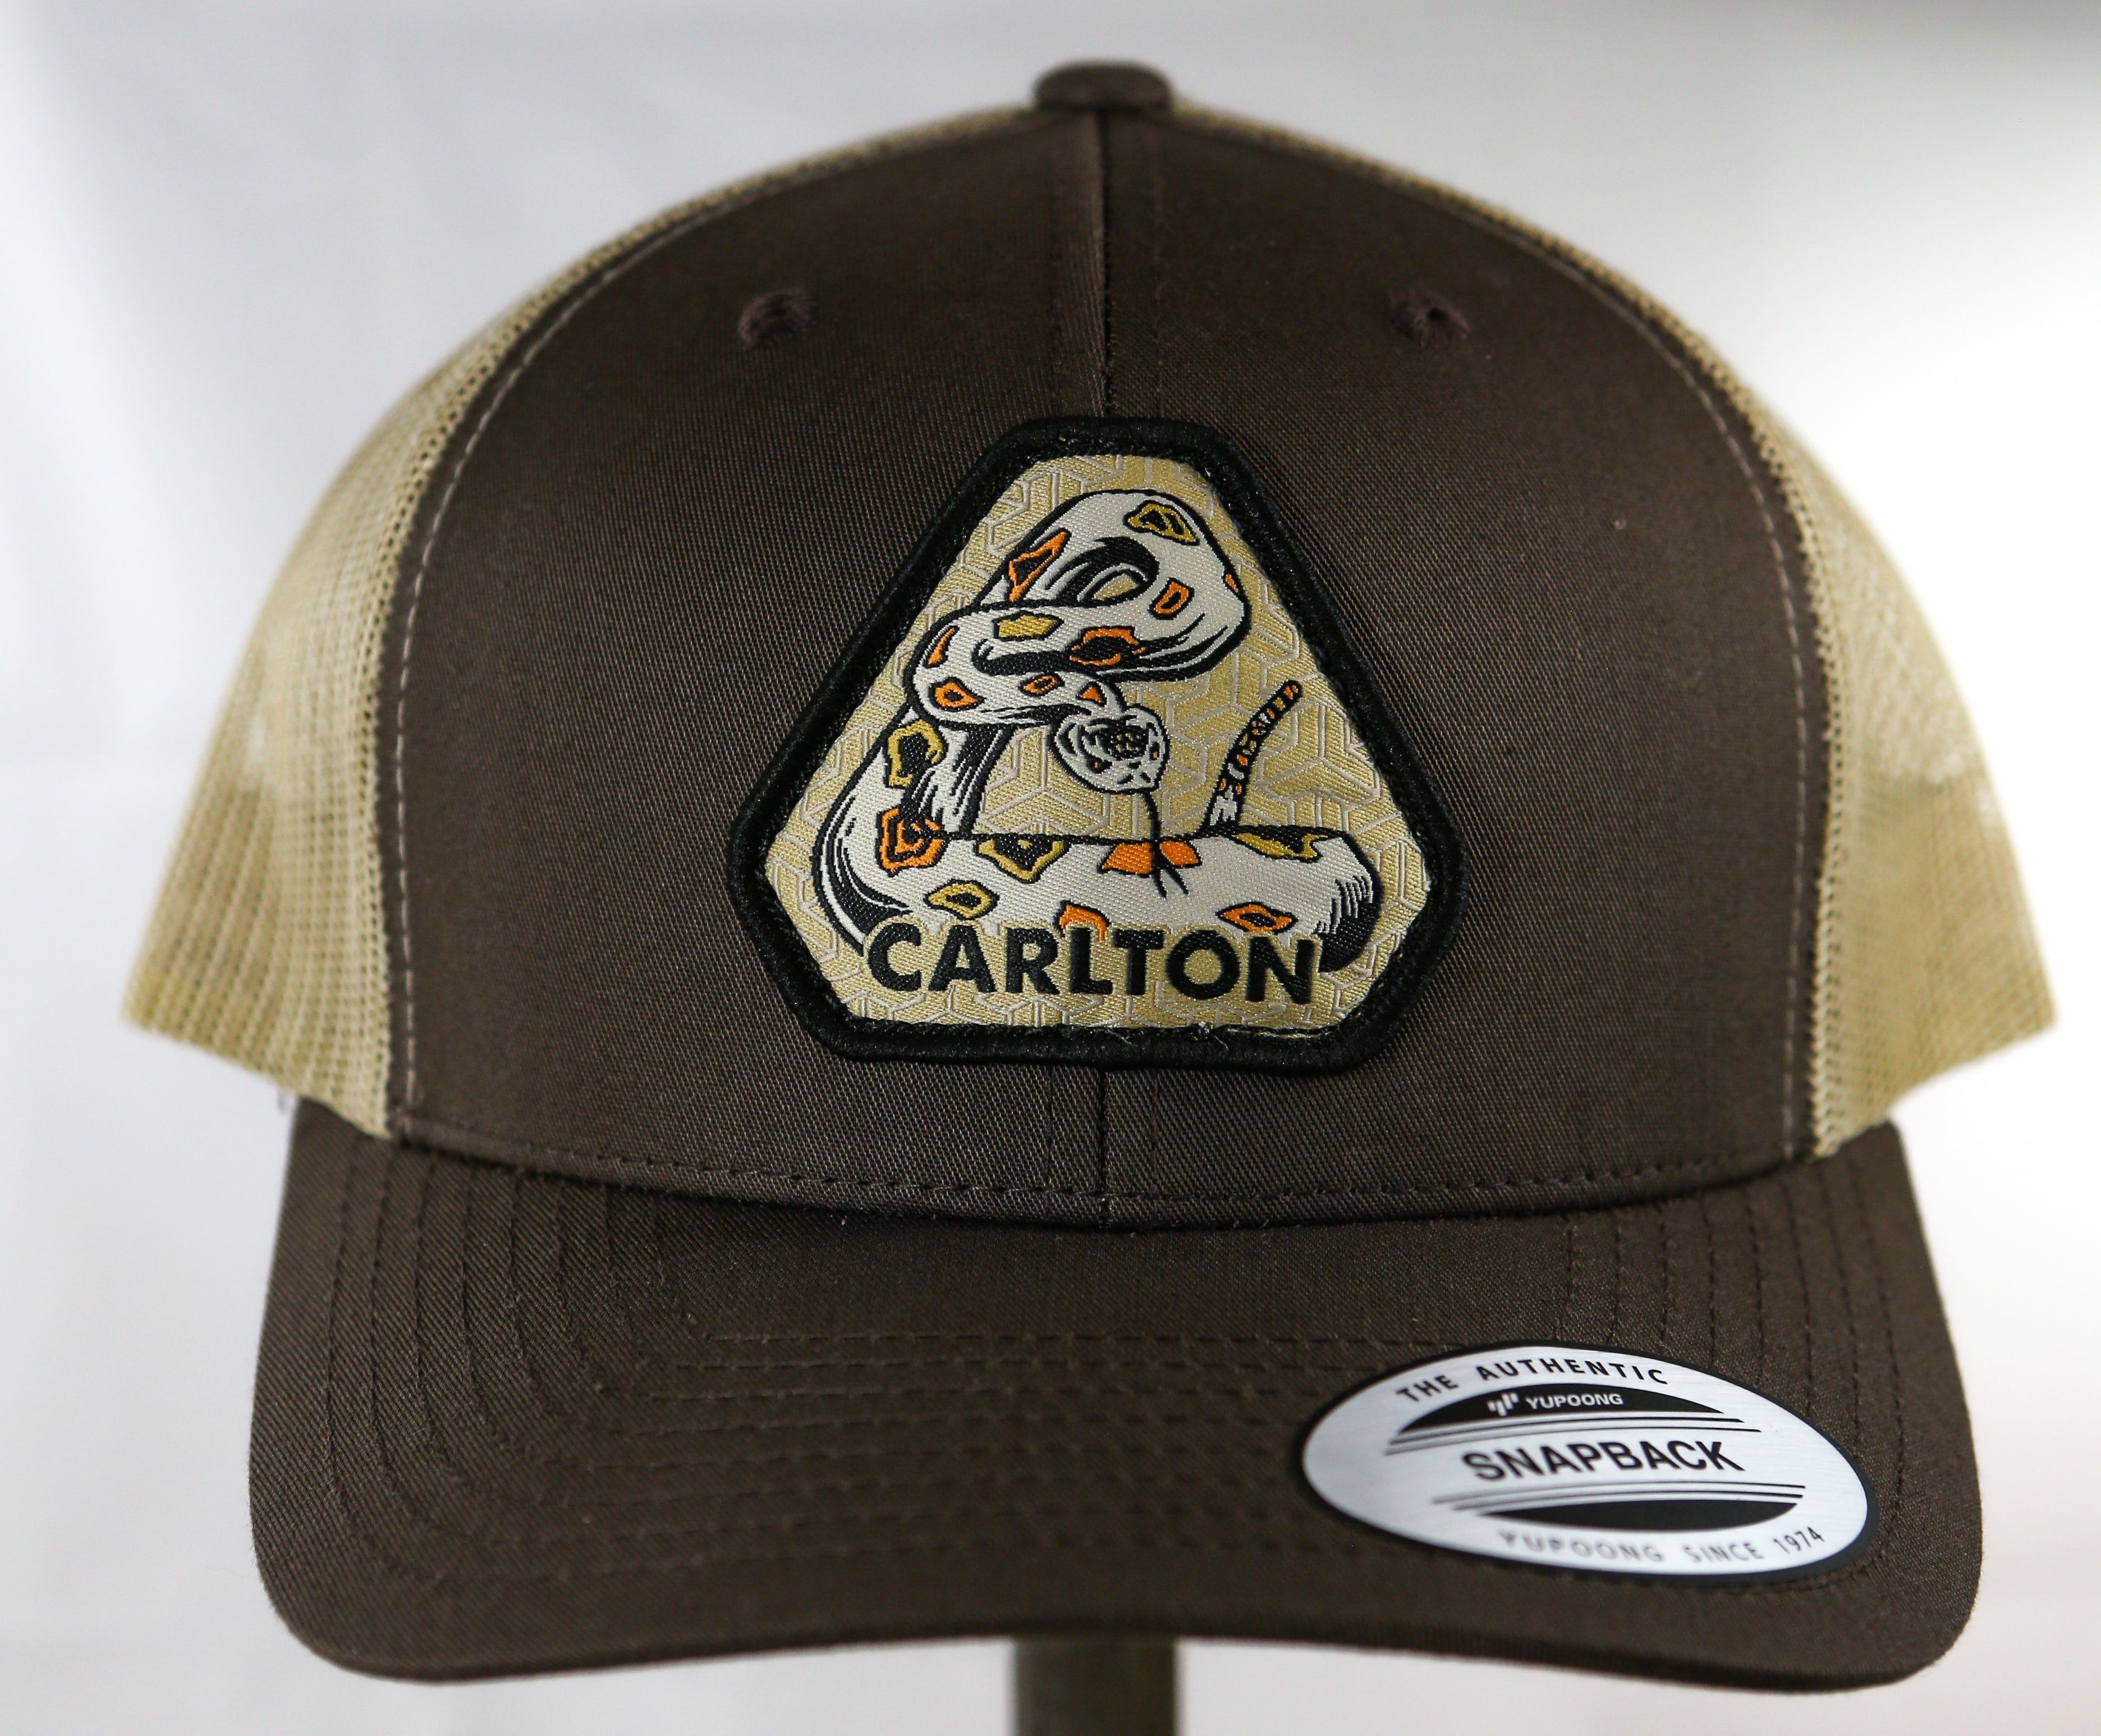 Carlton Trucker Hat